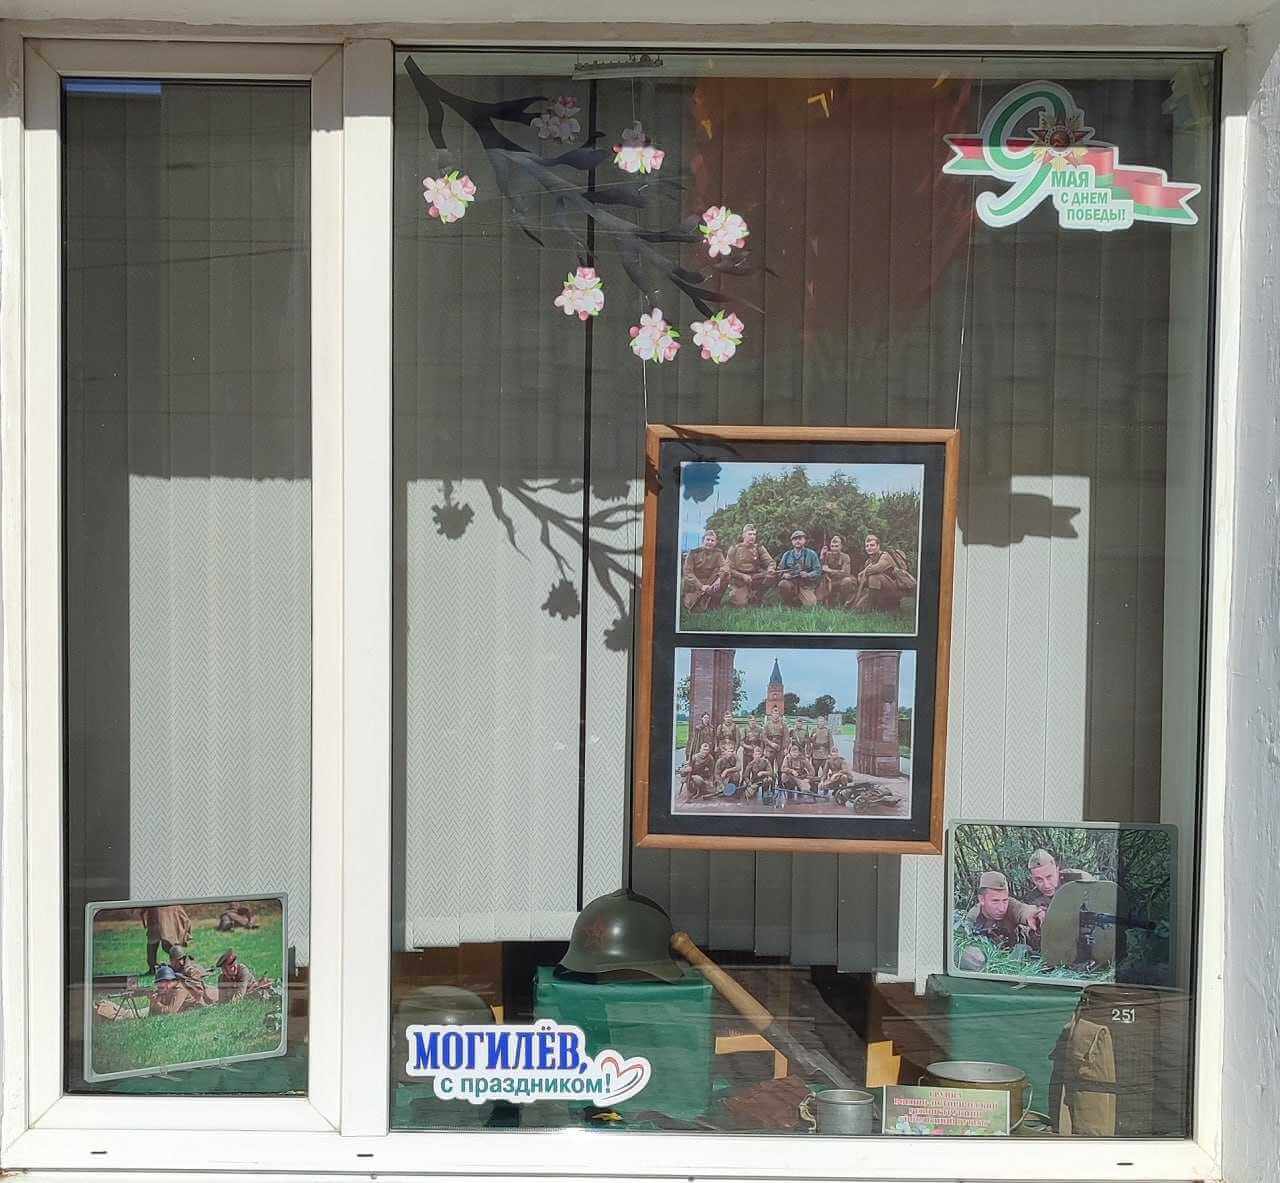 "Арт-окно": новая выставка в окнах библиотеки в Могилеве